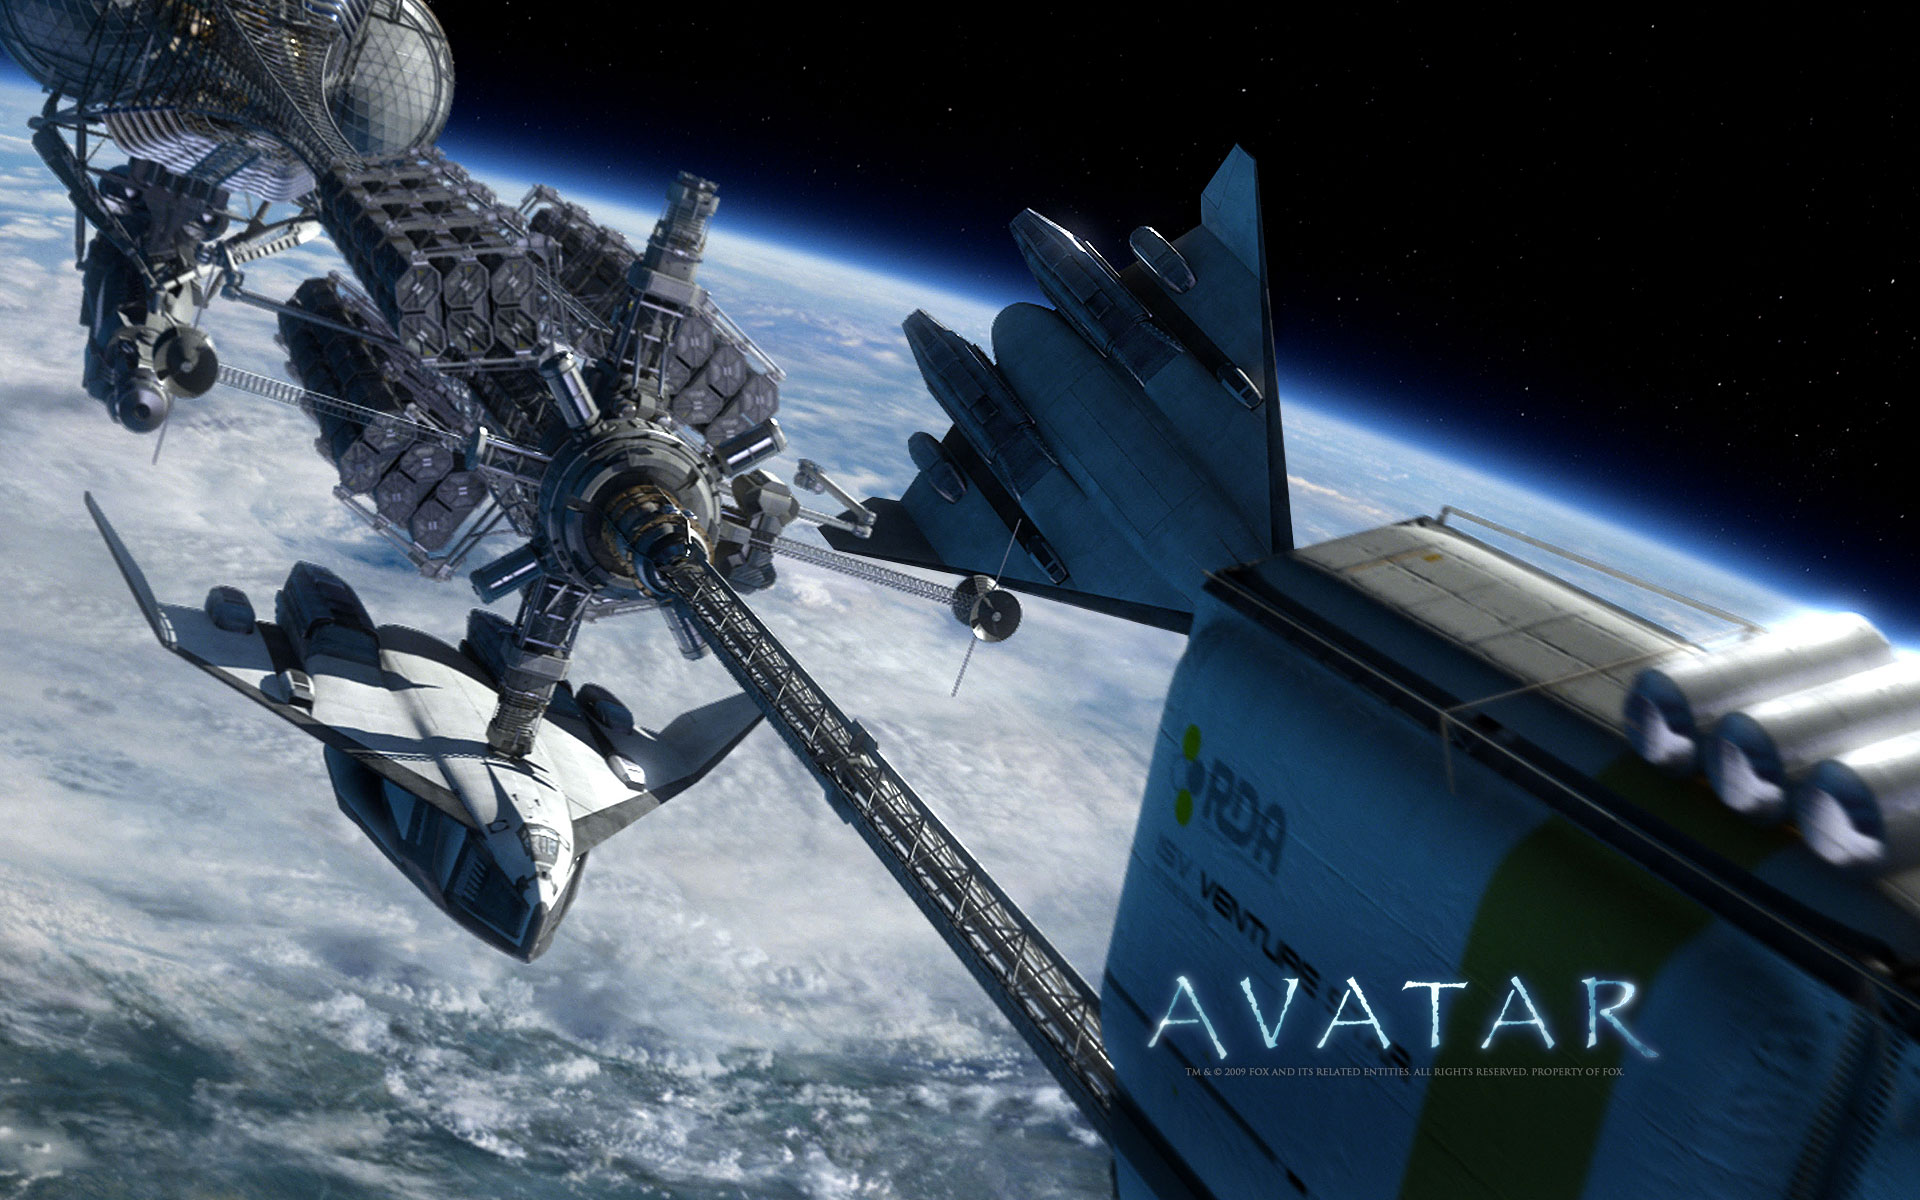 outer space, Avatar - desktop wallpaper